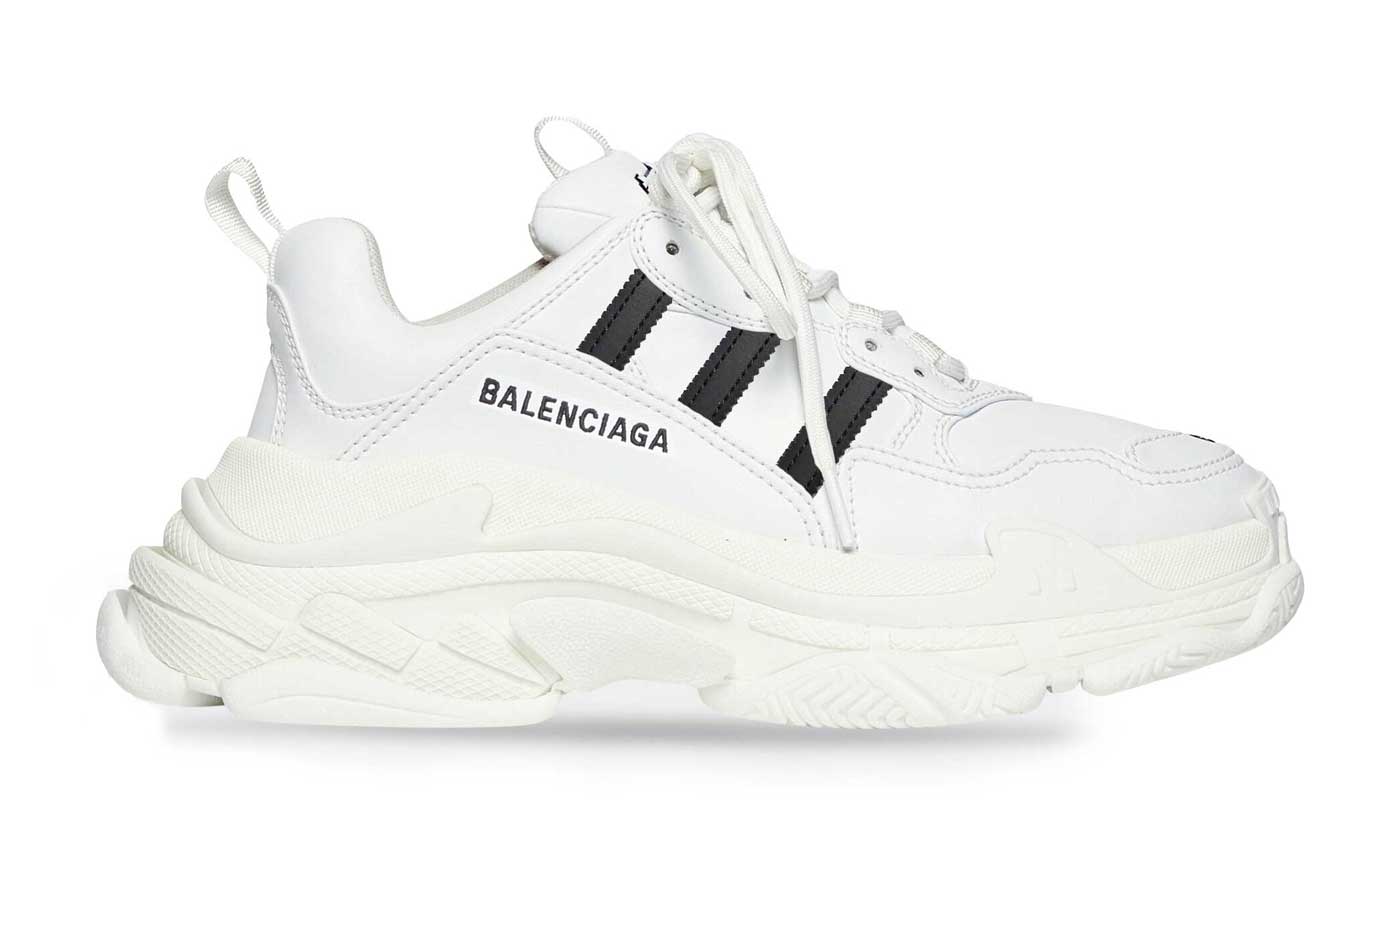 adidas x Balenciaga Triple S Collab: First Look, Sneaker Leak